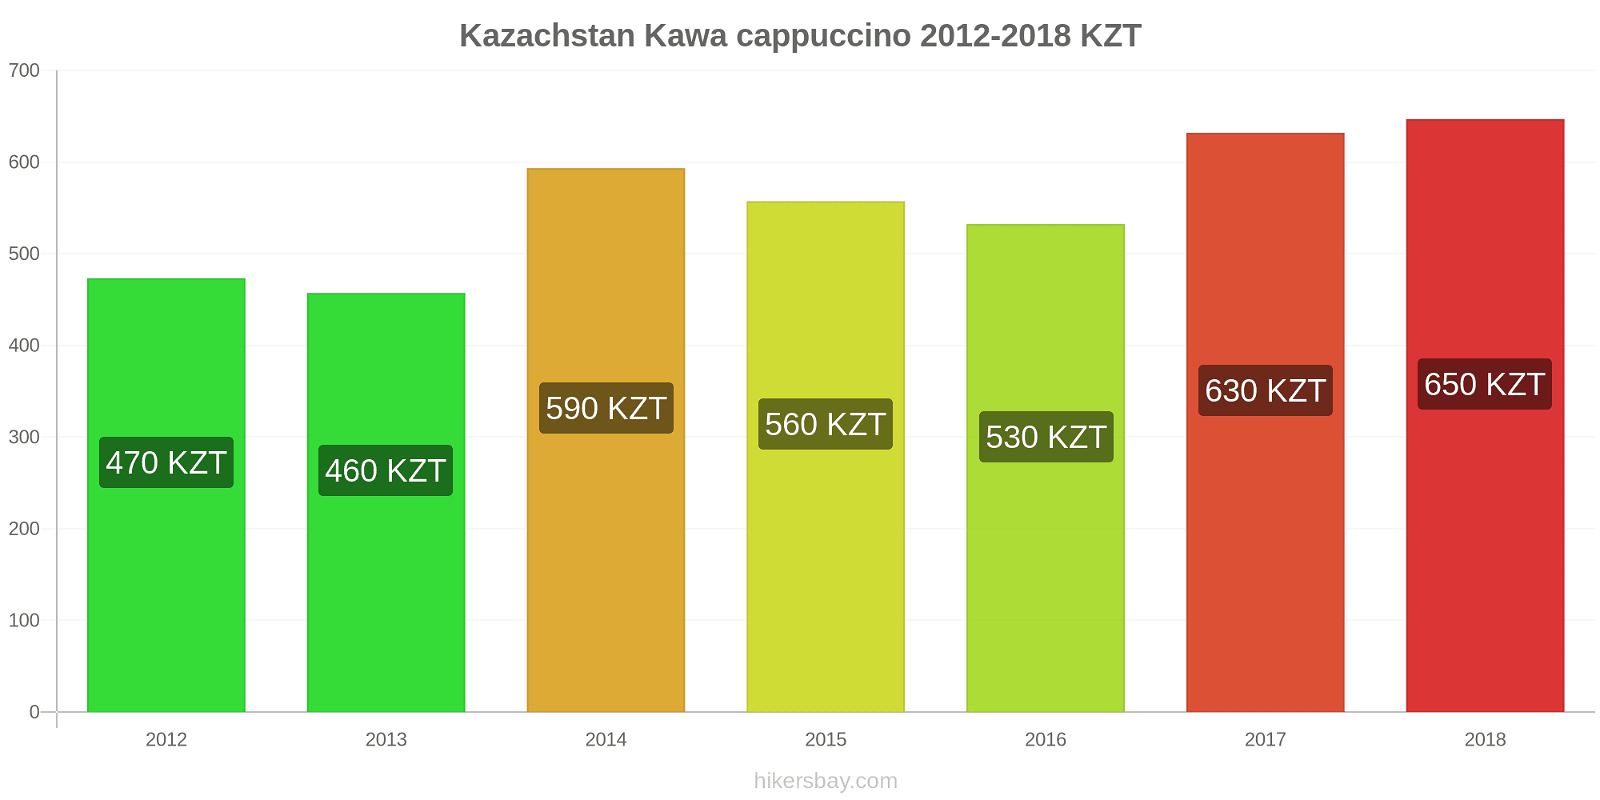 Kazachstan zmiany cen Kawa cappuccino hikersbay.com